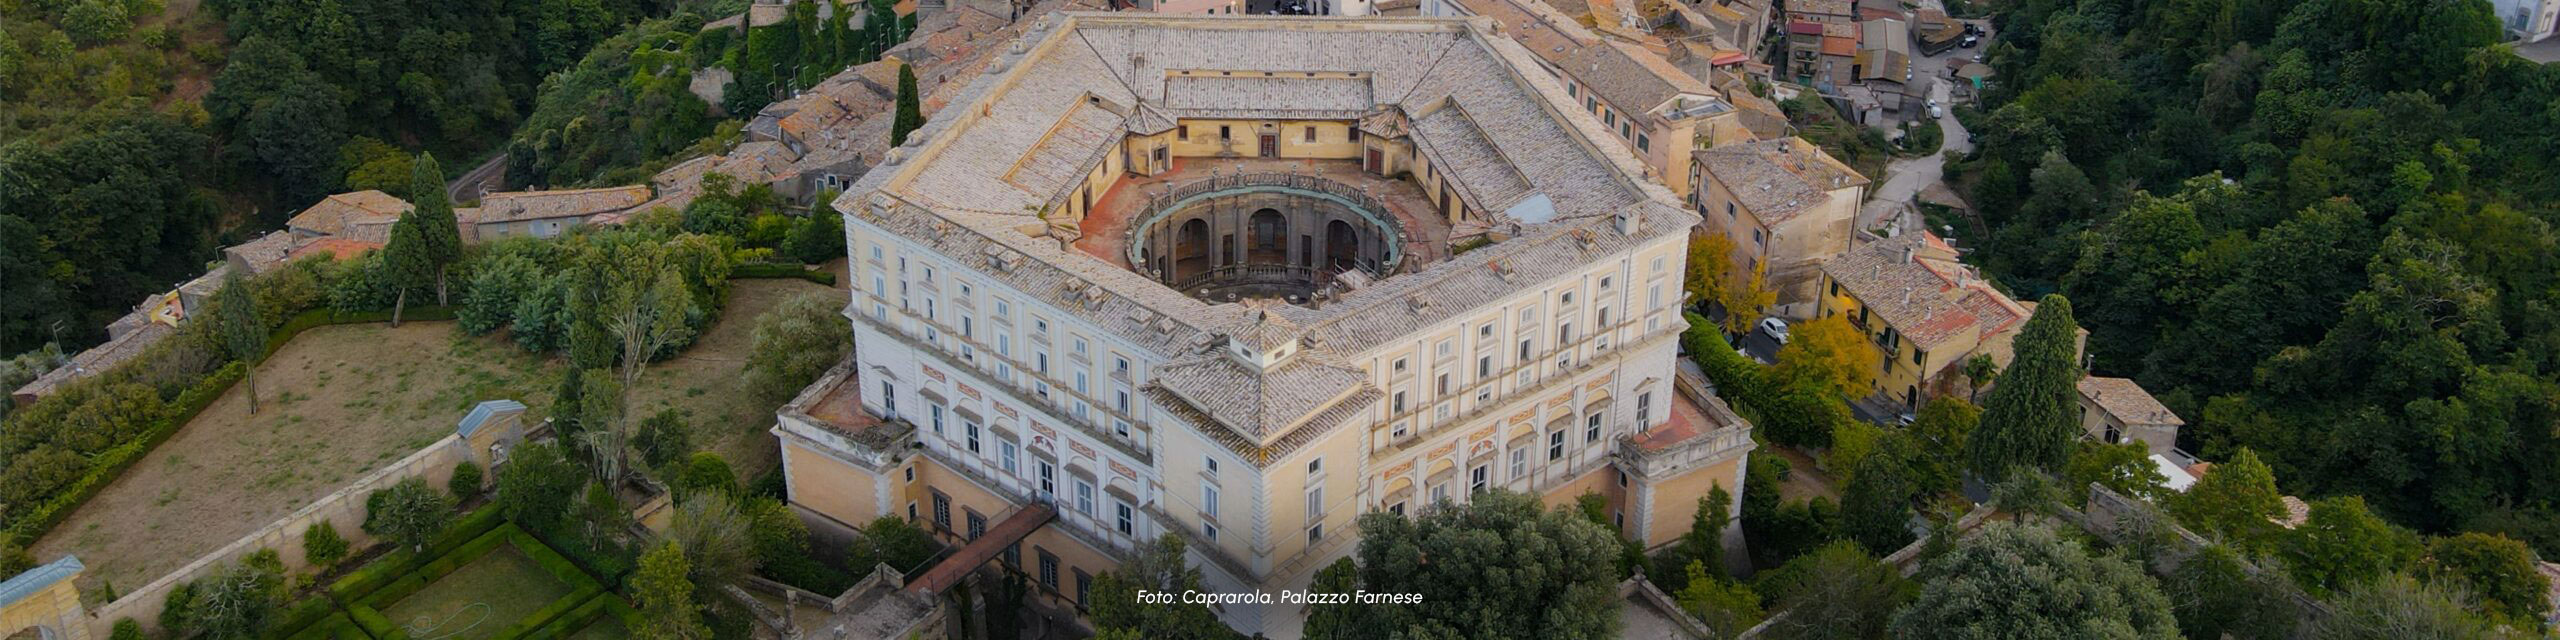 Copertina dell'itinerario Roma a colori. Quadraro, Tor Marancia e Torpignattara. LAZIO-wide-scaled-1.jpg